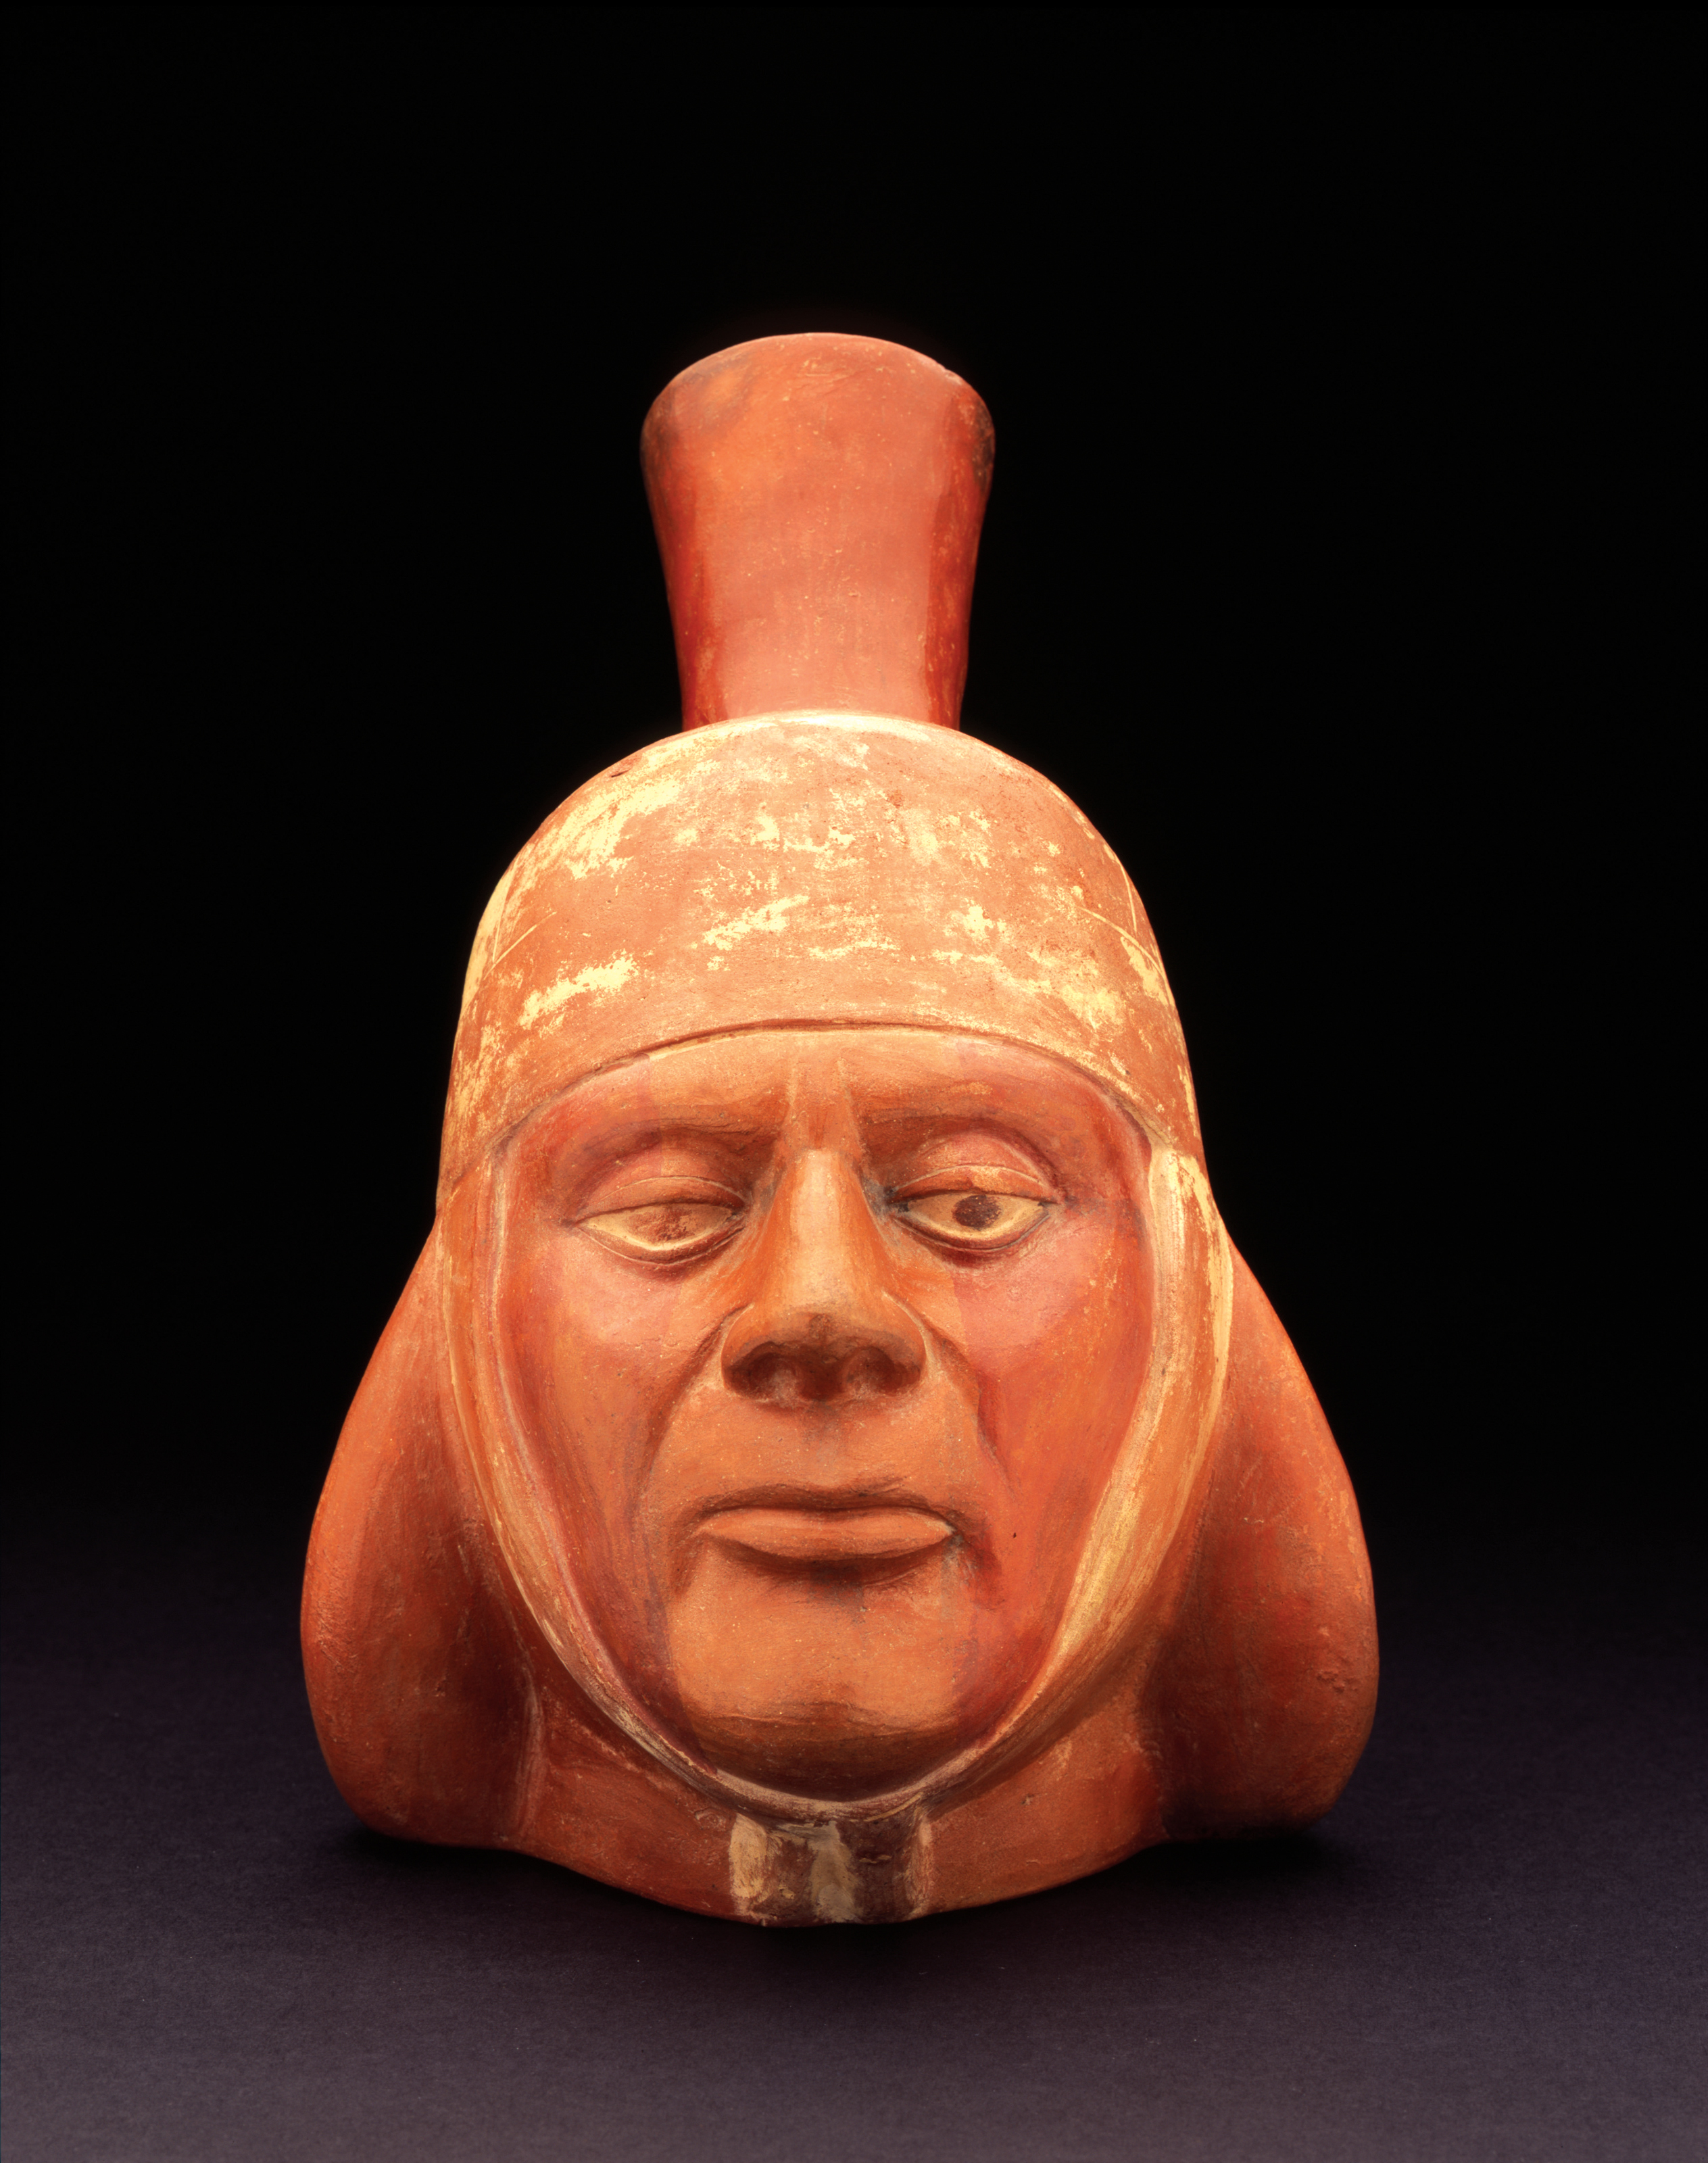 File:Moche portrait vessel from Peru.jpg